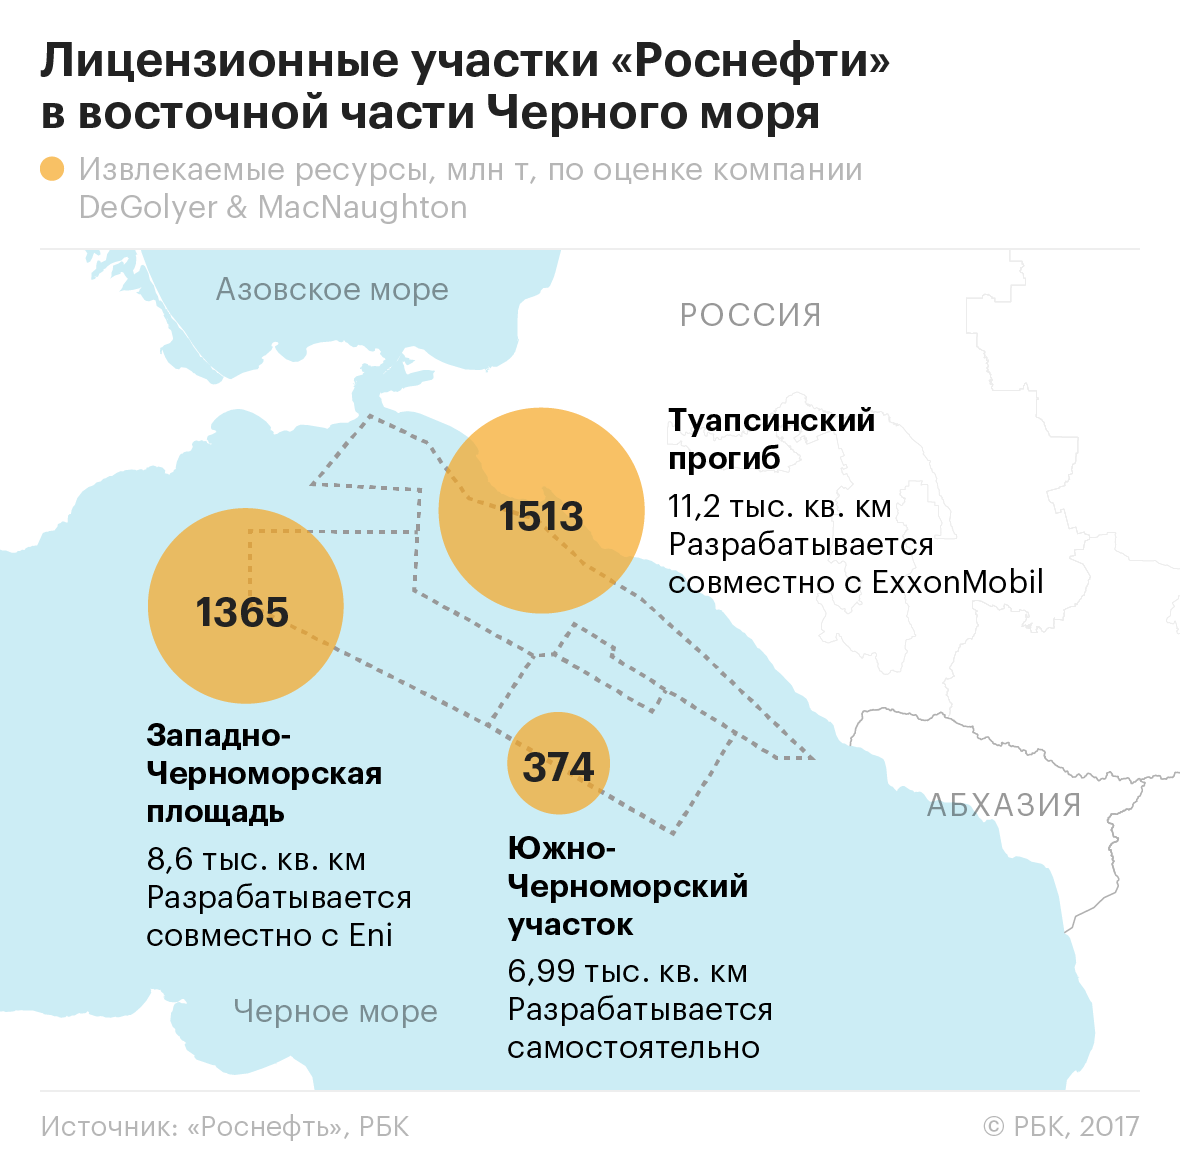 «Роснефть» остановила работы на участке шельфа Черного моря из-за санкций